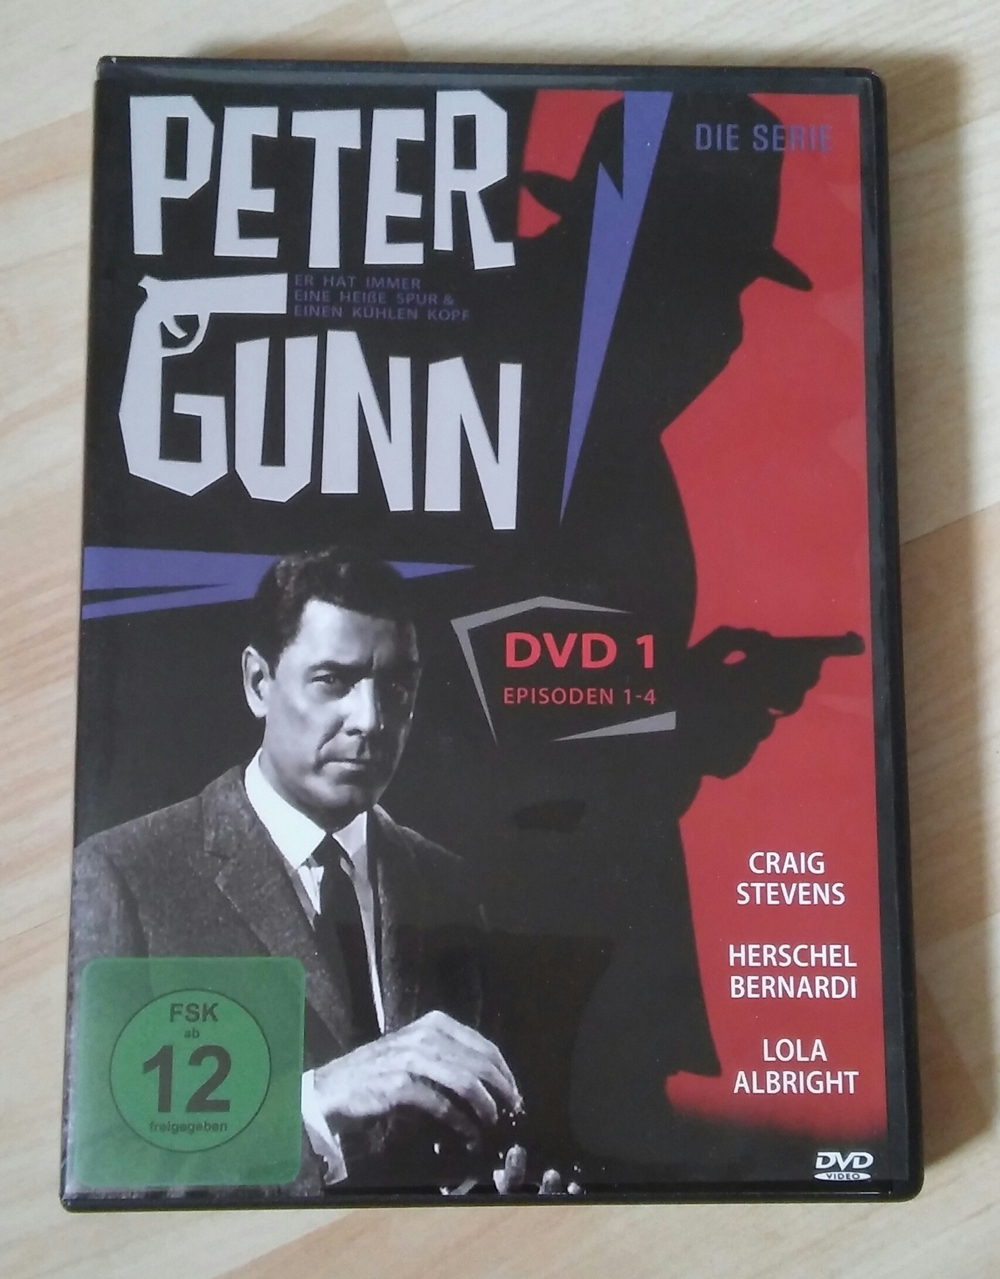 Peter Gunn Krimi Serie DVD 1 Episoden 1-4 mit Craig Stevens